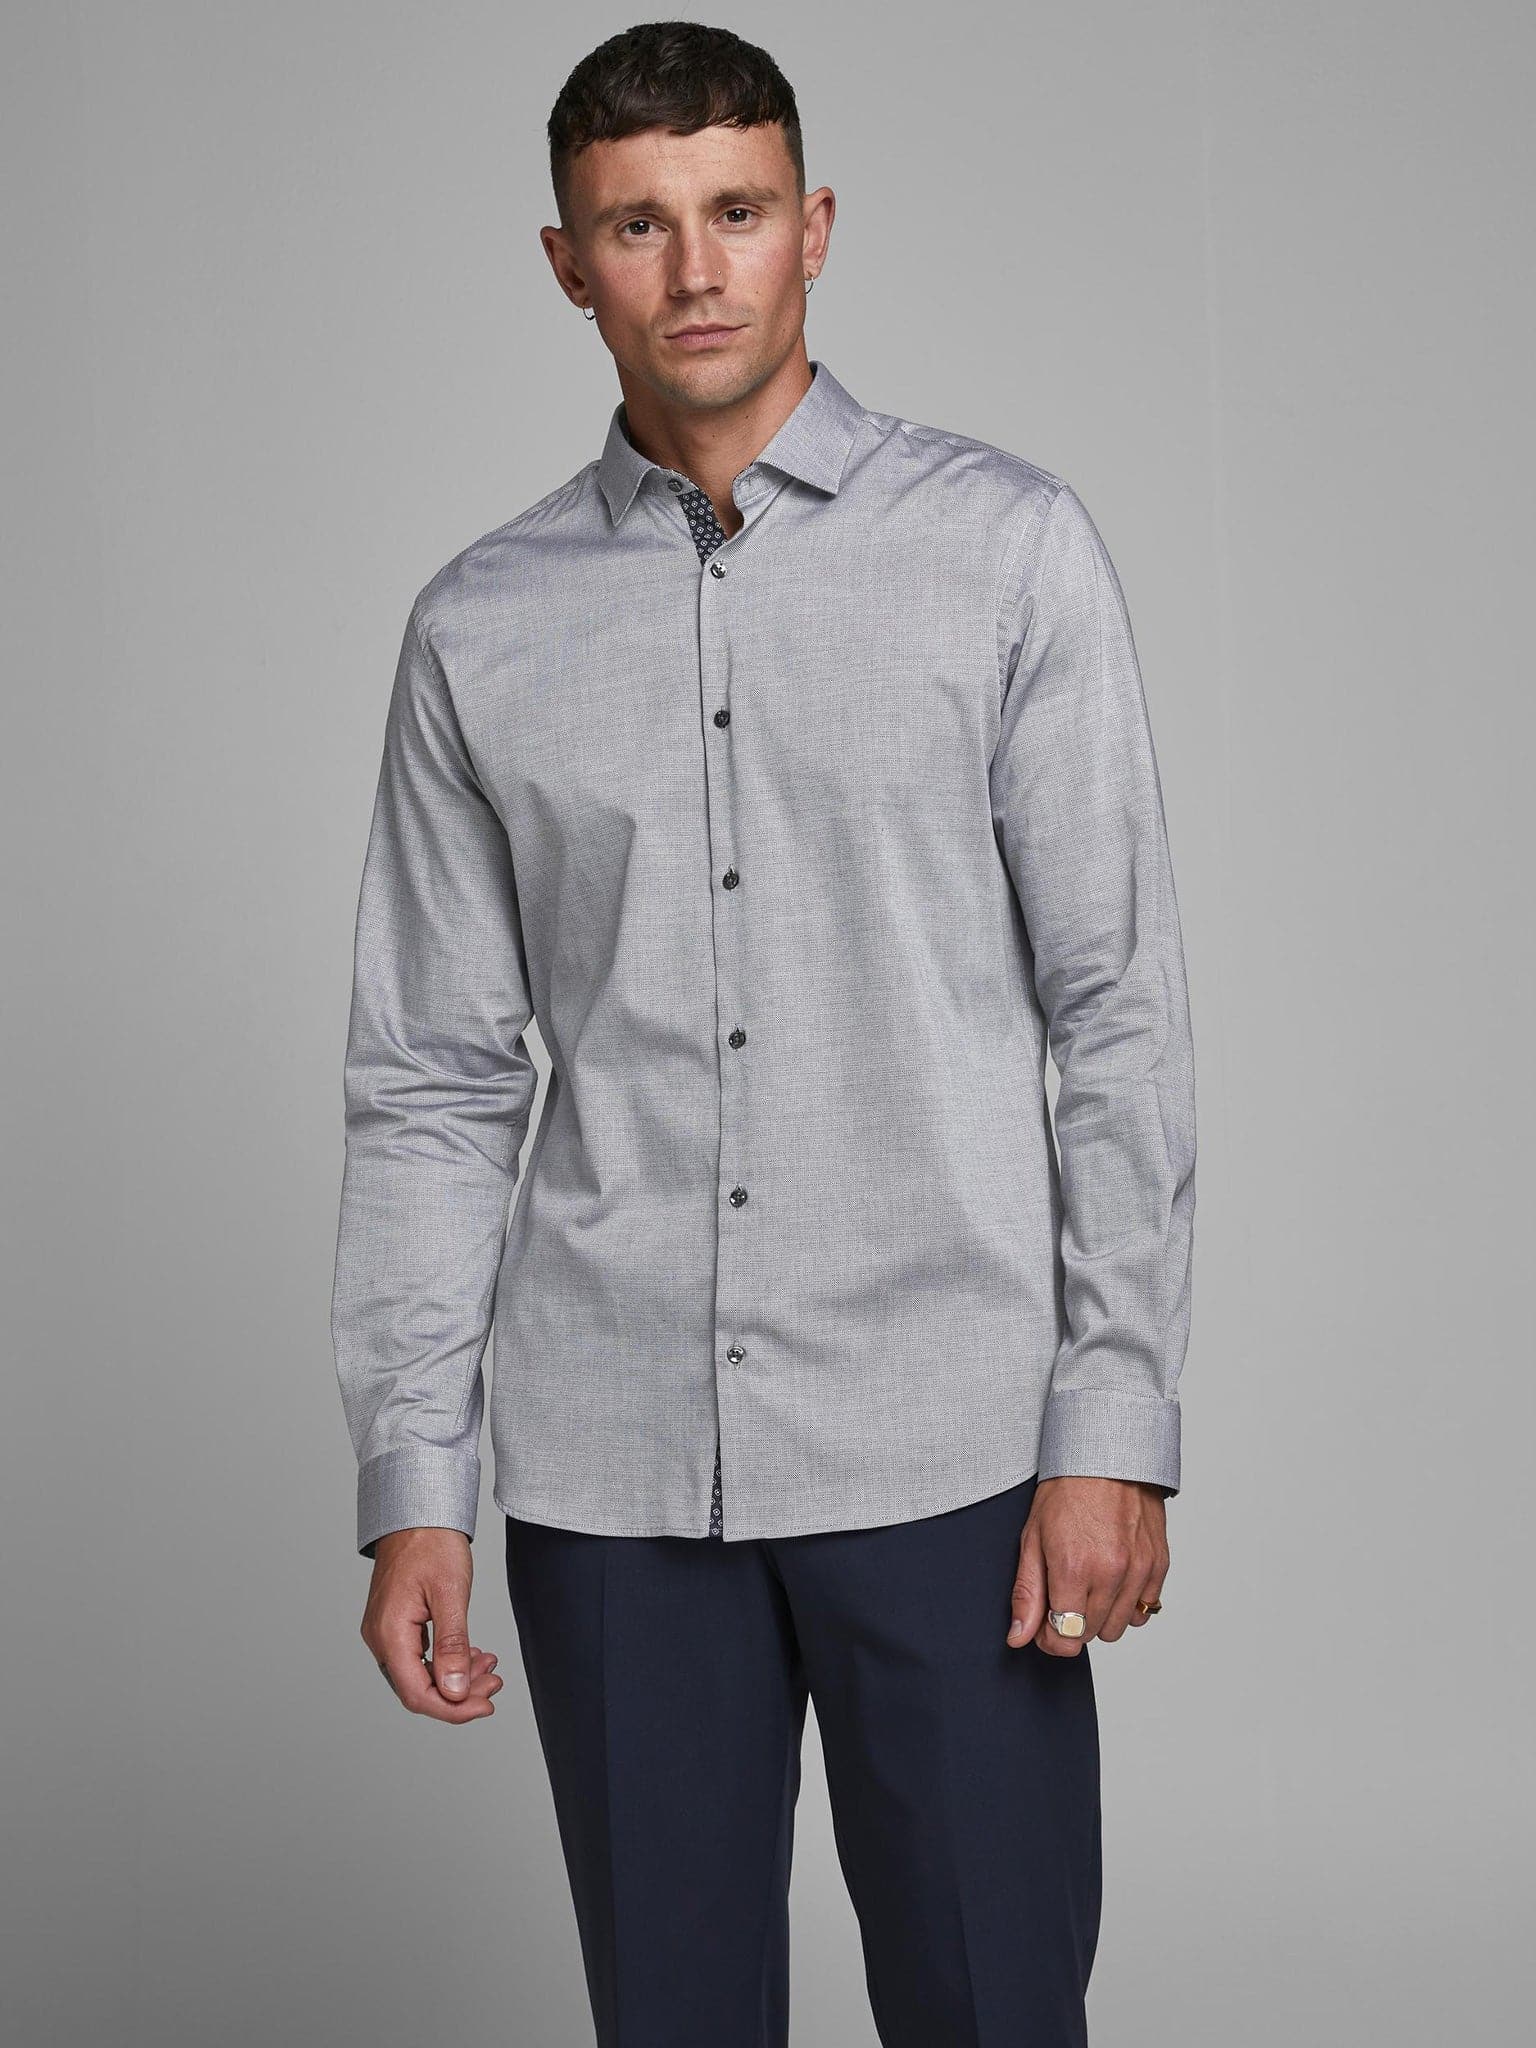 Ανδρικό πουκάμισο σχεδιαστικό slim fit | 12180159